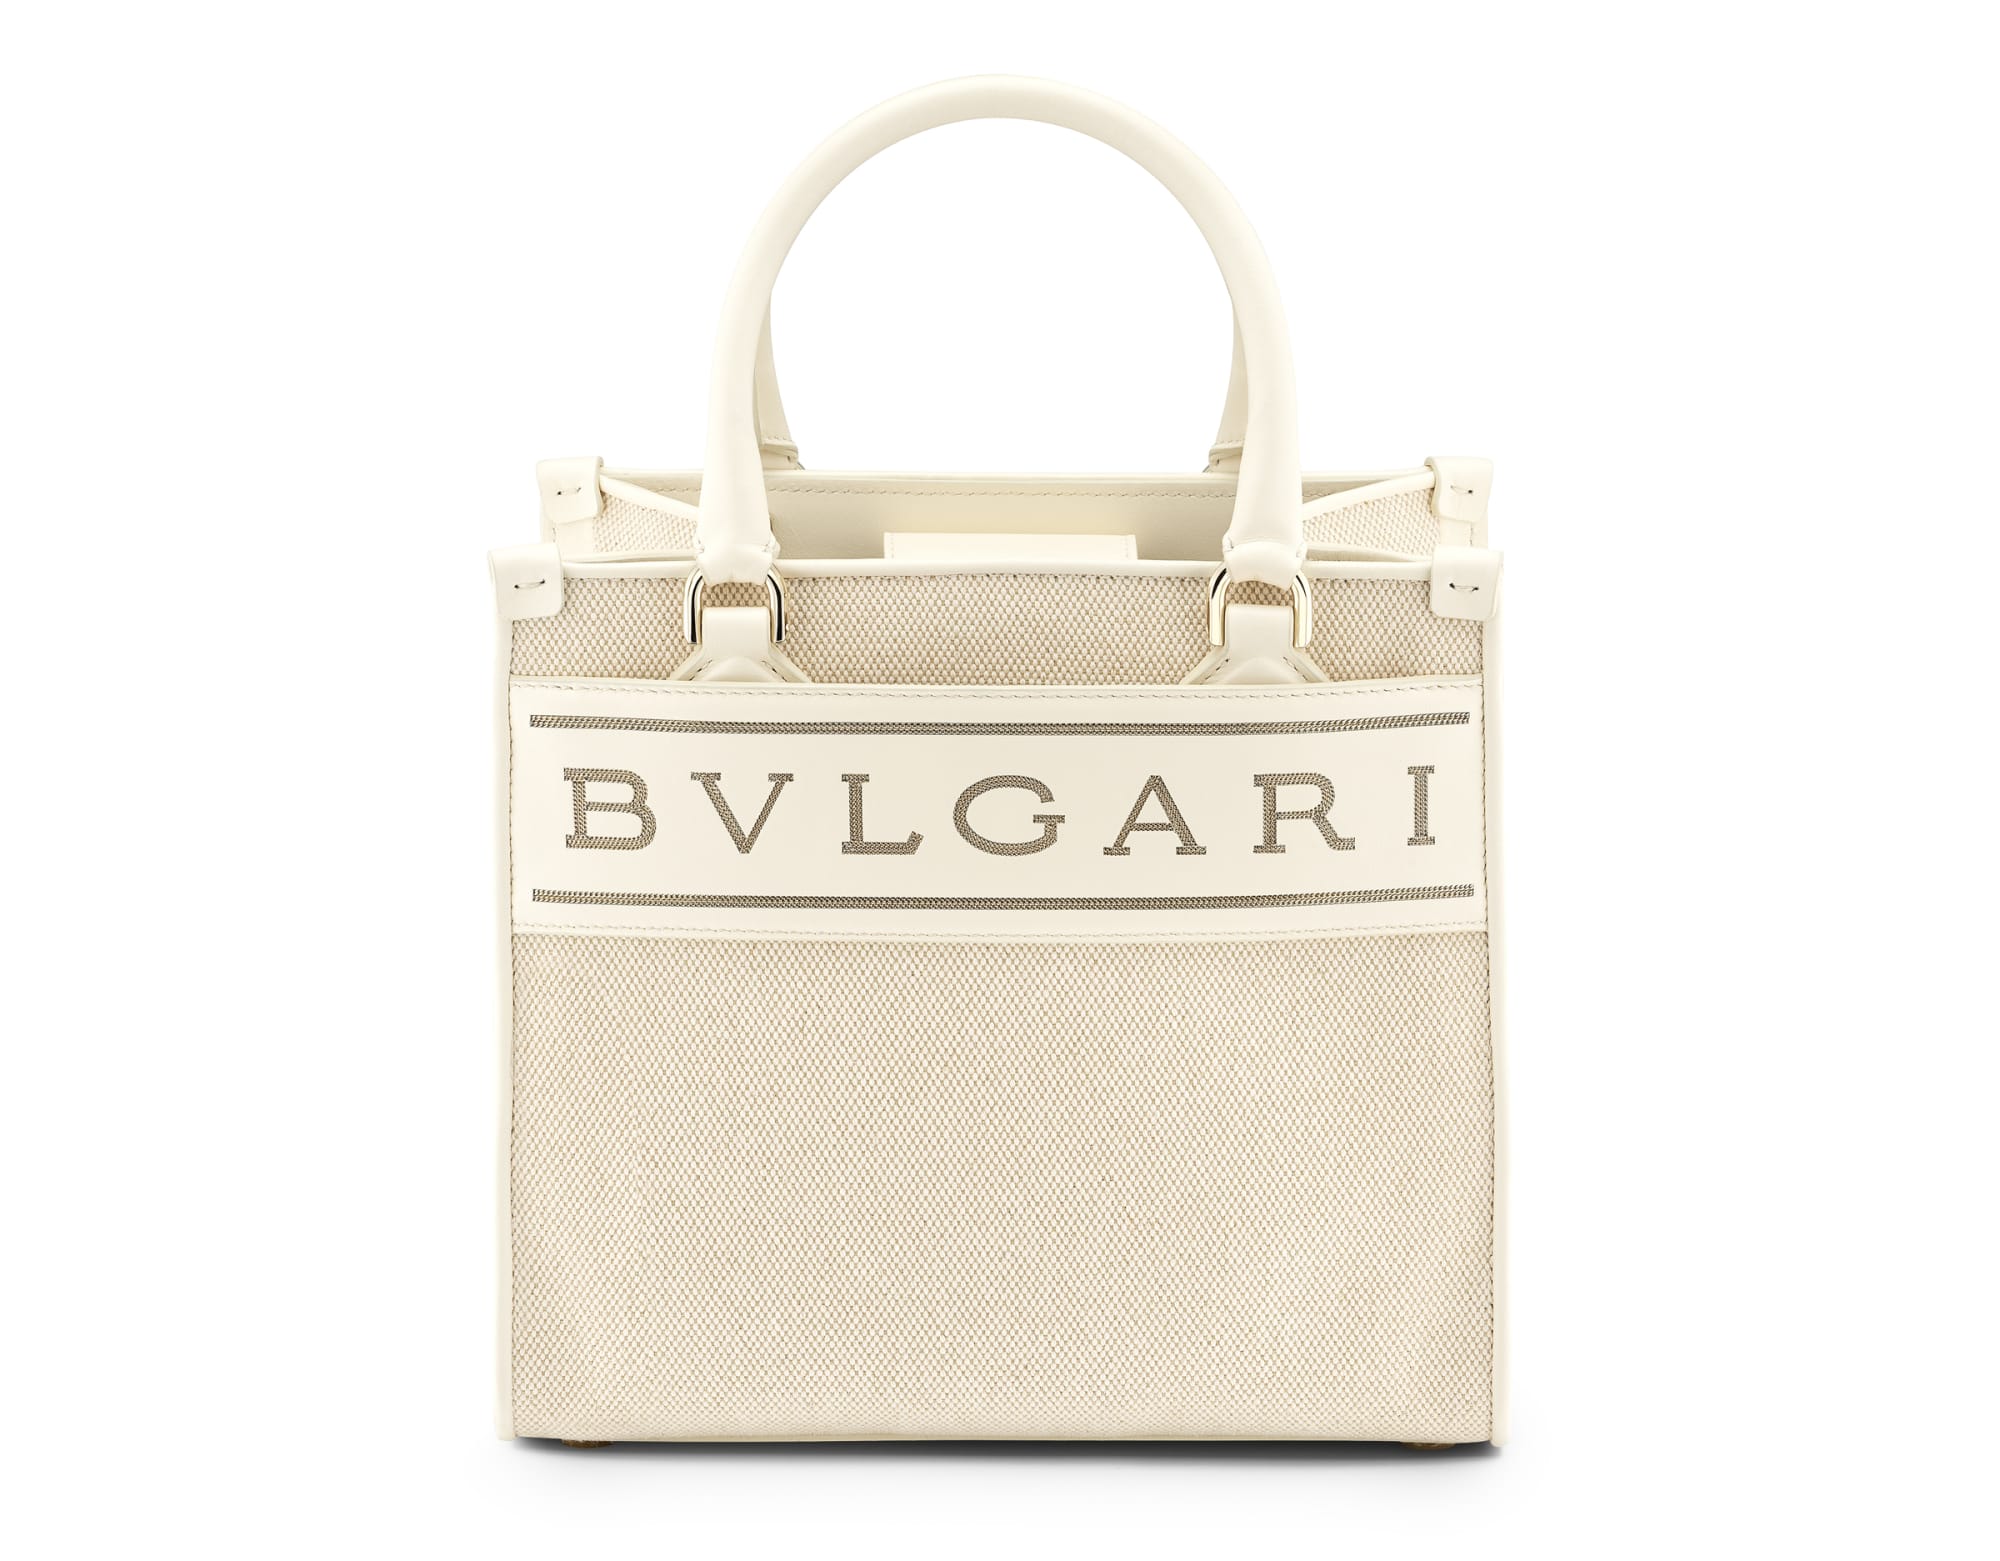 ブルガリが新作「ブルガリ ロゴ」バッグ発売、職人がロゴをチェーンで装飾